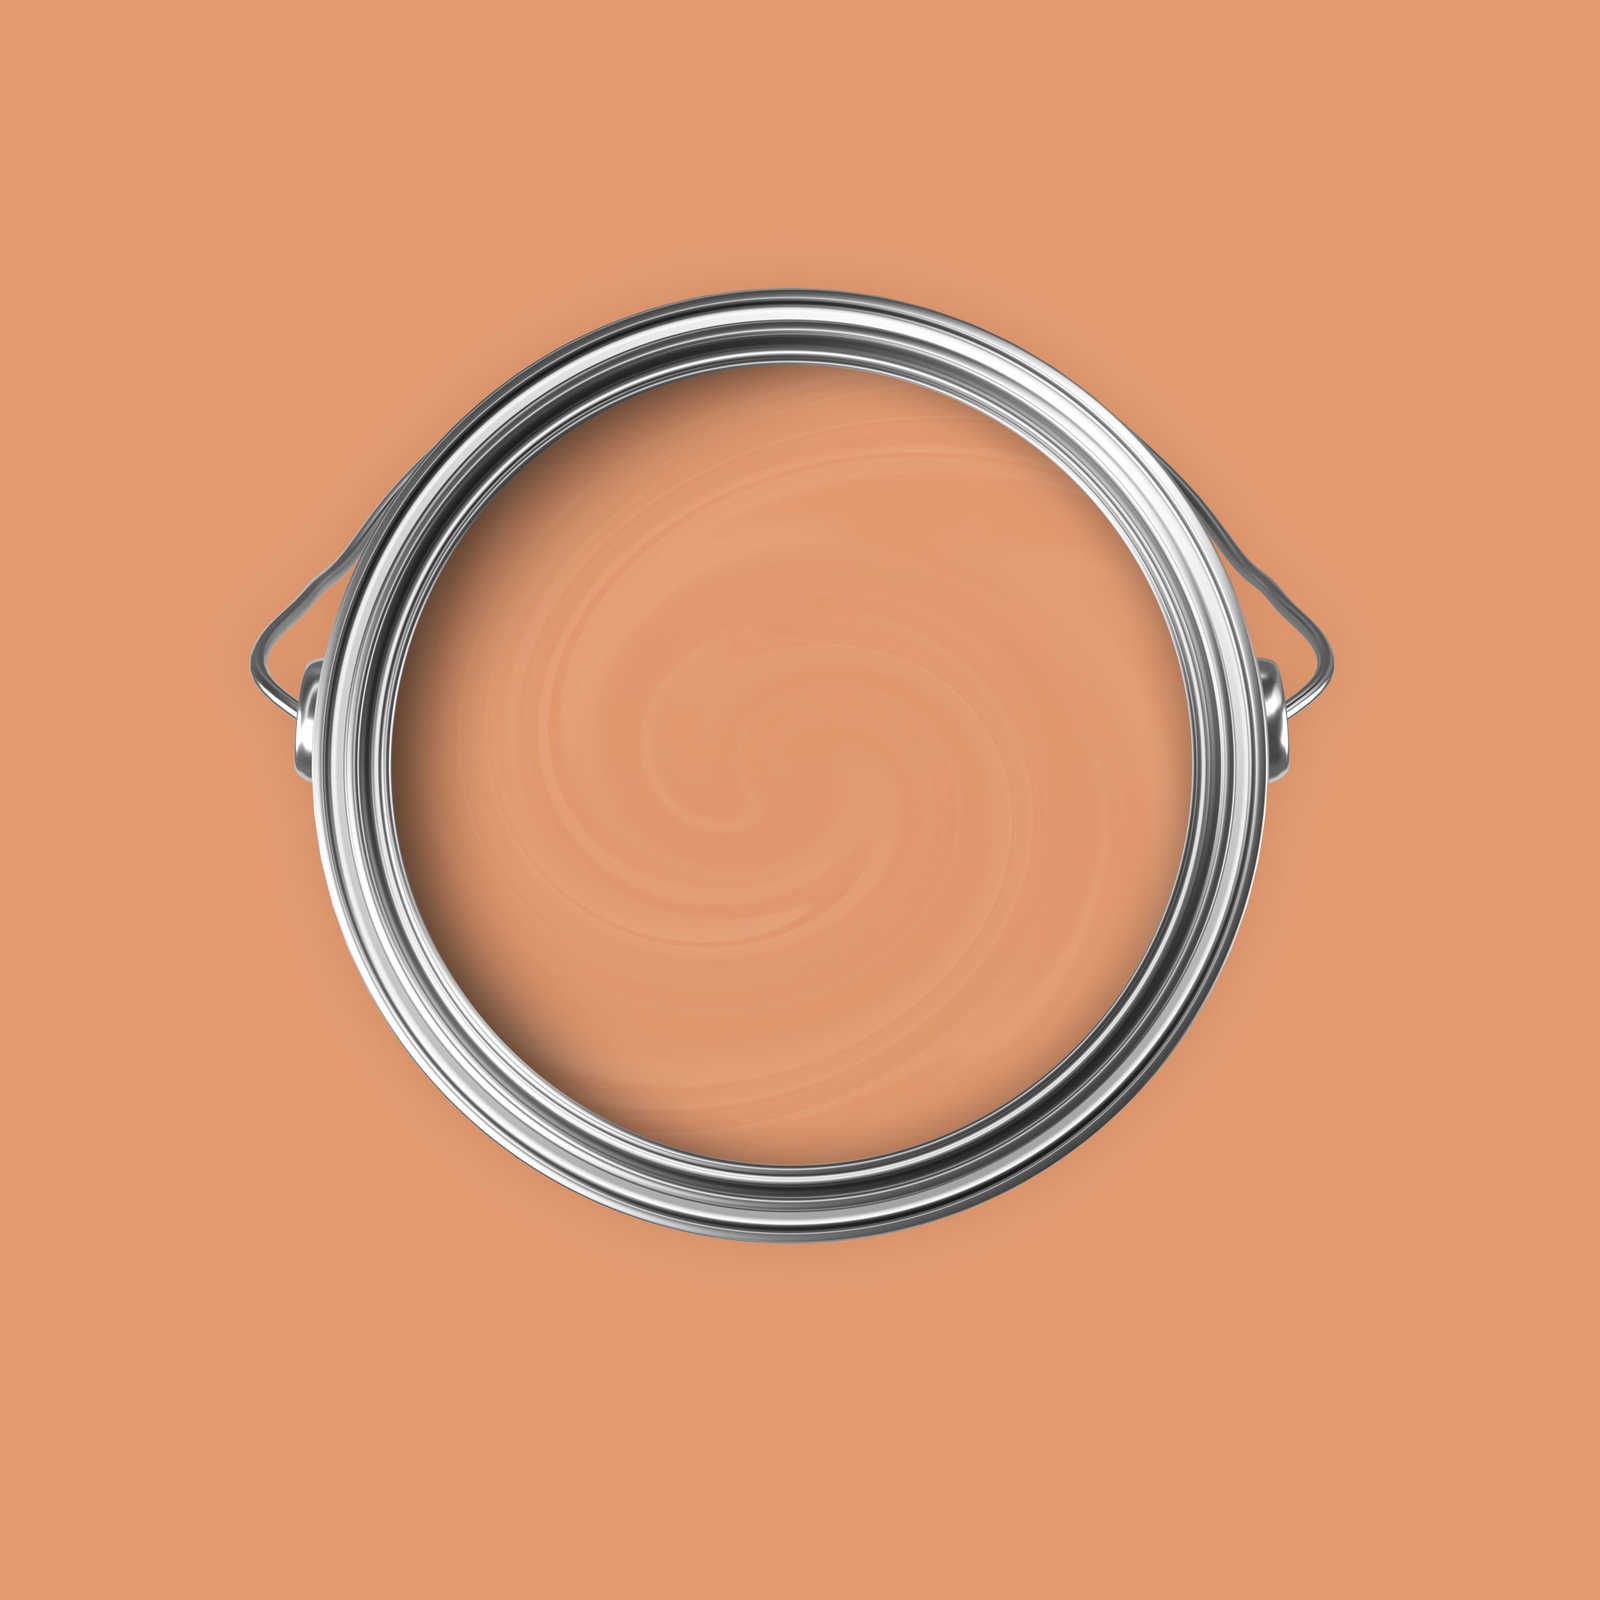             Premium Wandfarbe erfrischendes Apricot »Pretty Peach« NW902 – 5 Liter
        